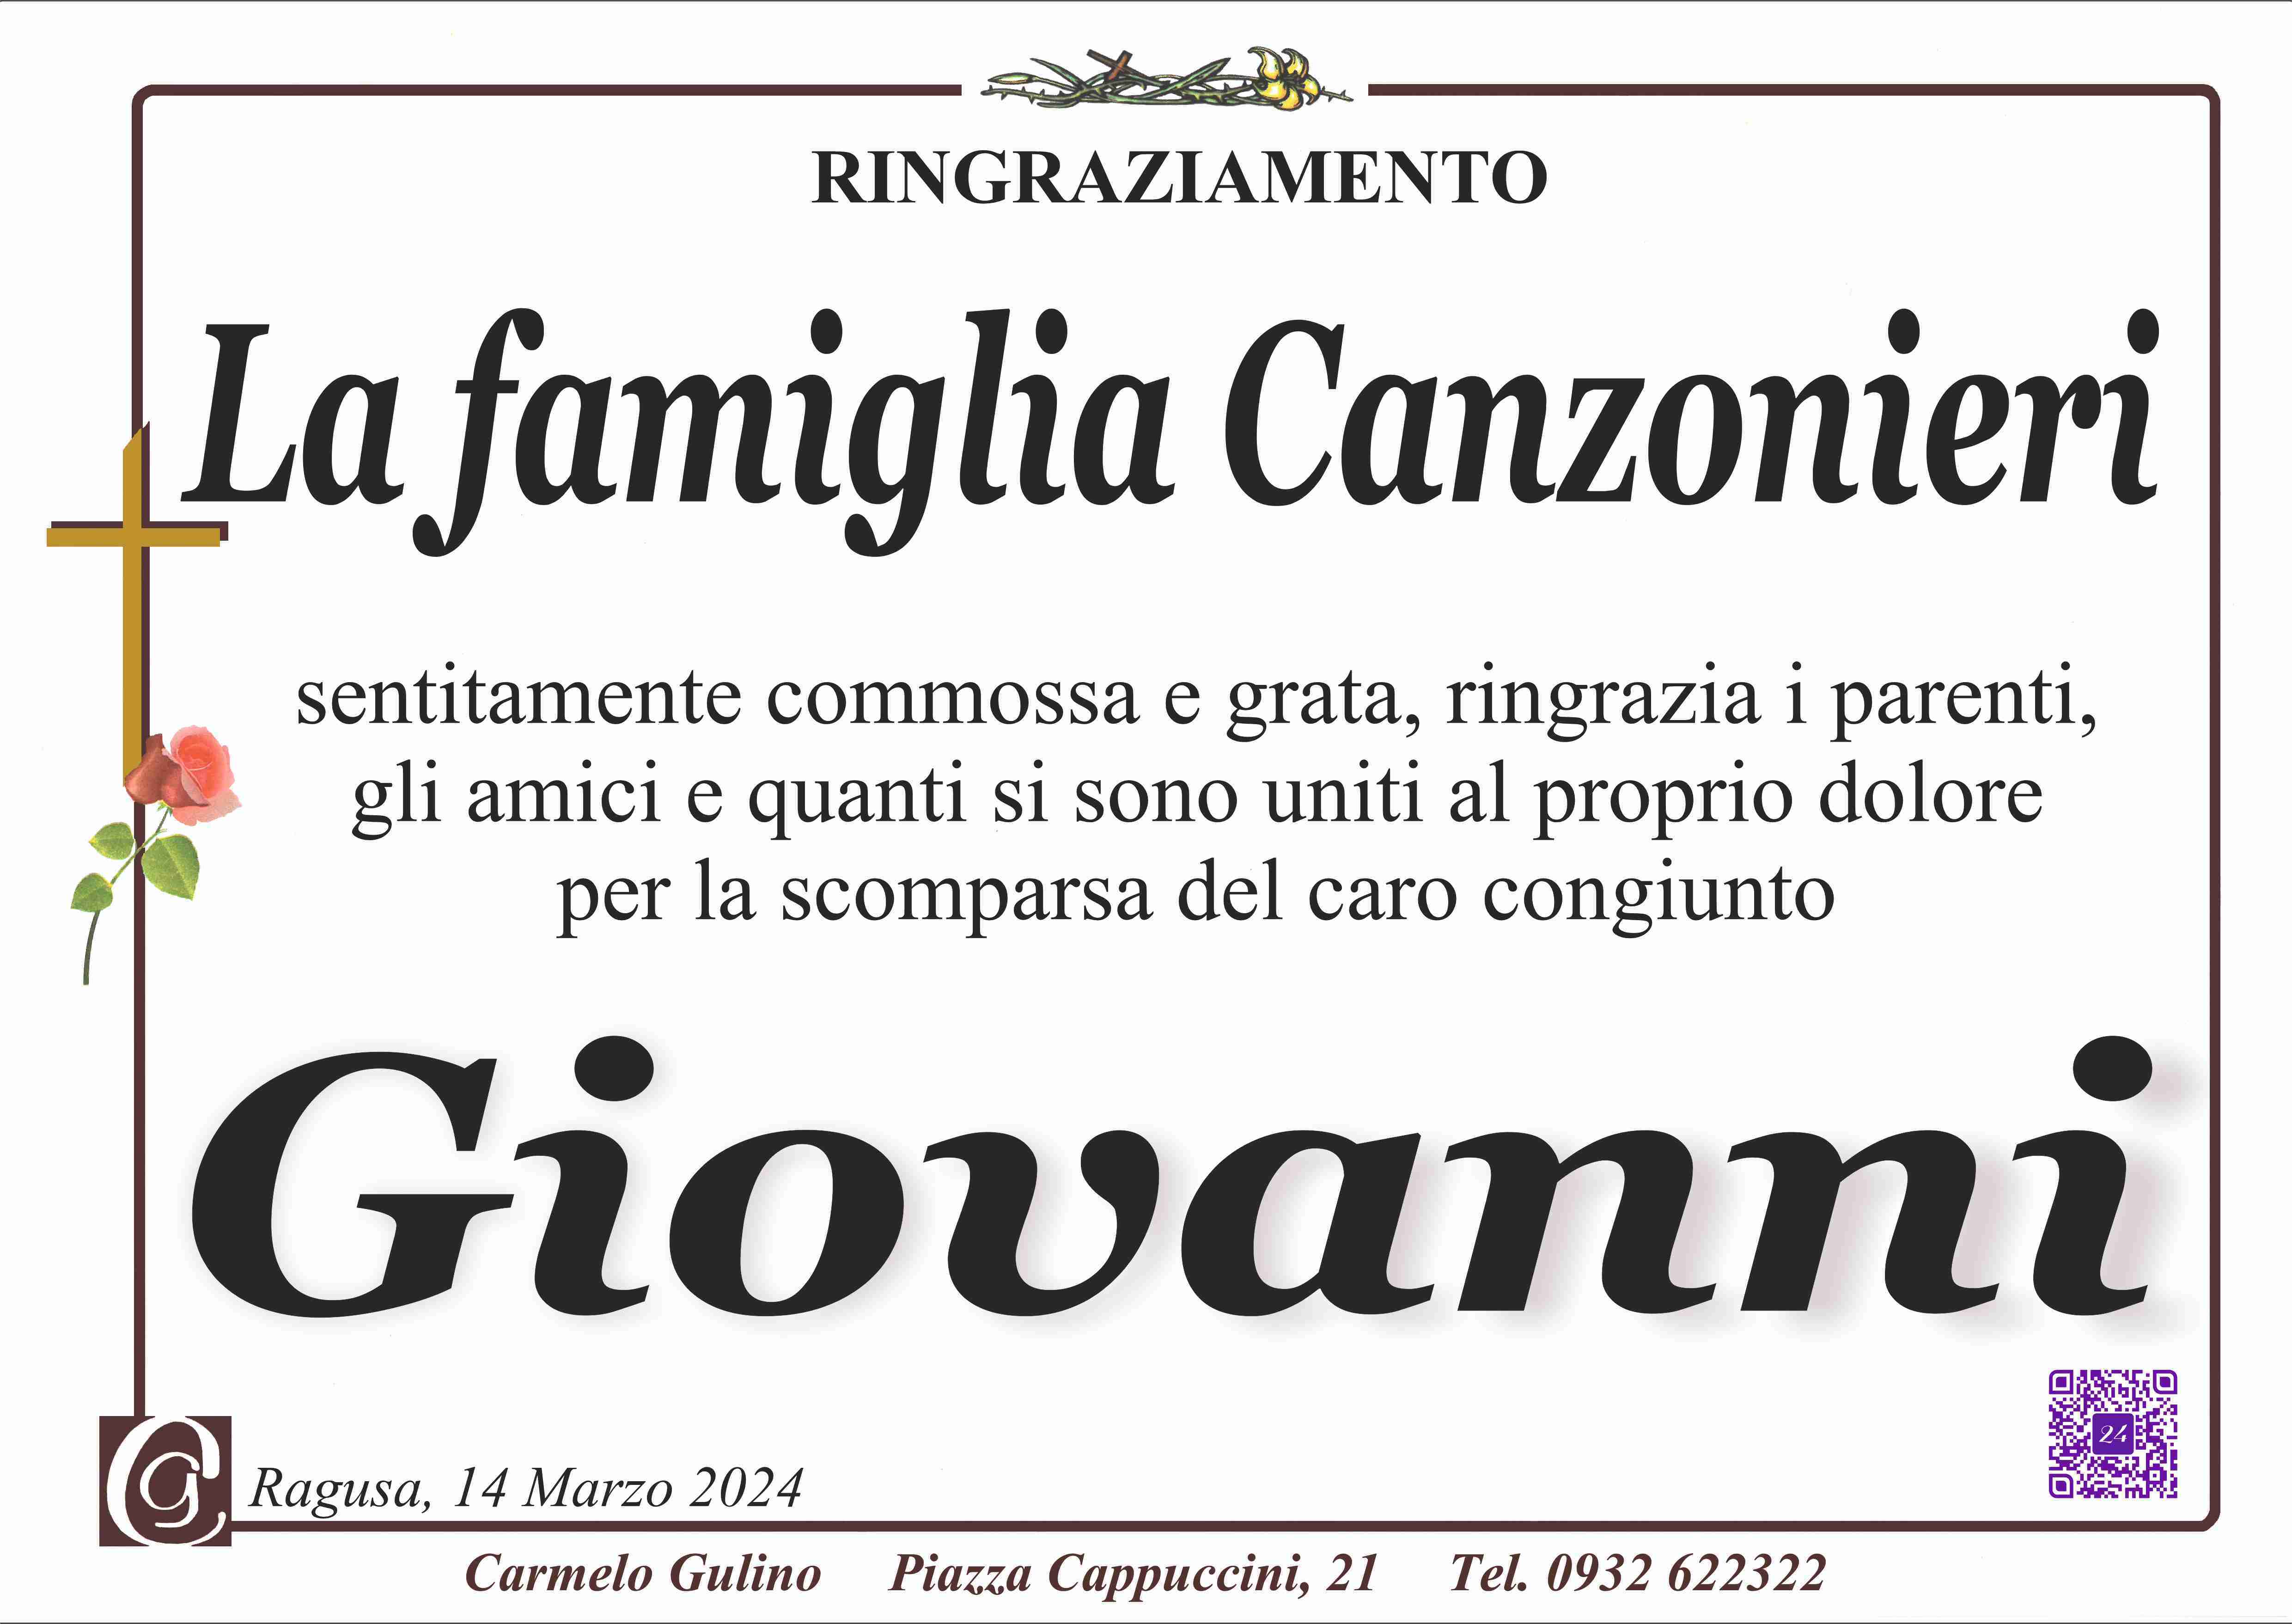 Giovanni Canzonieri